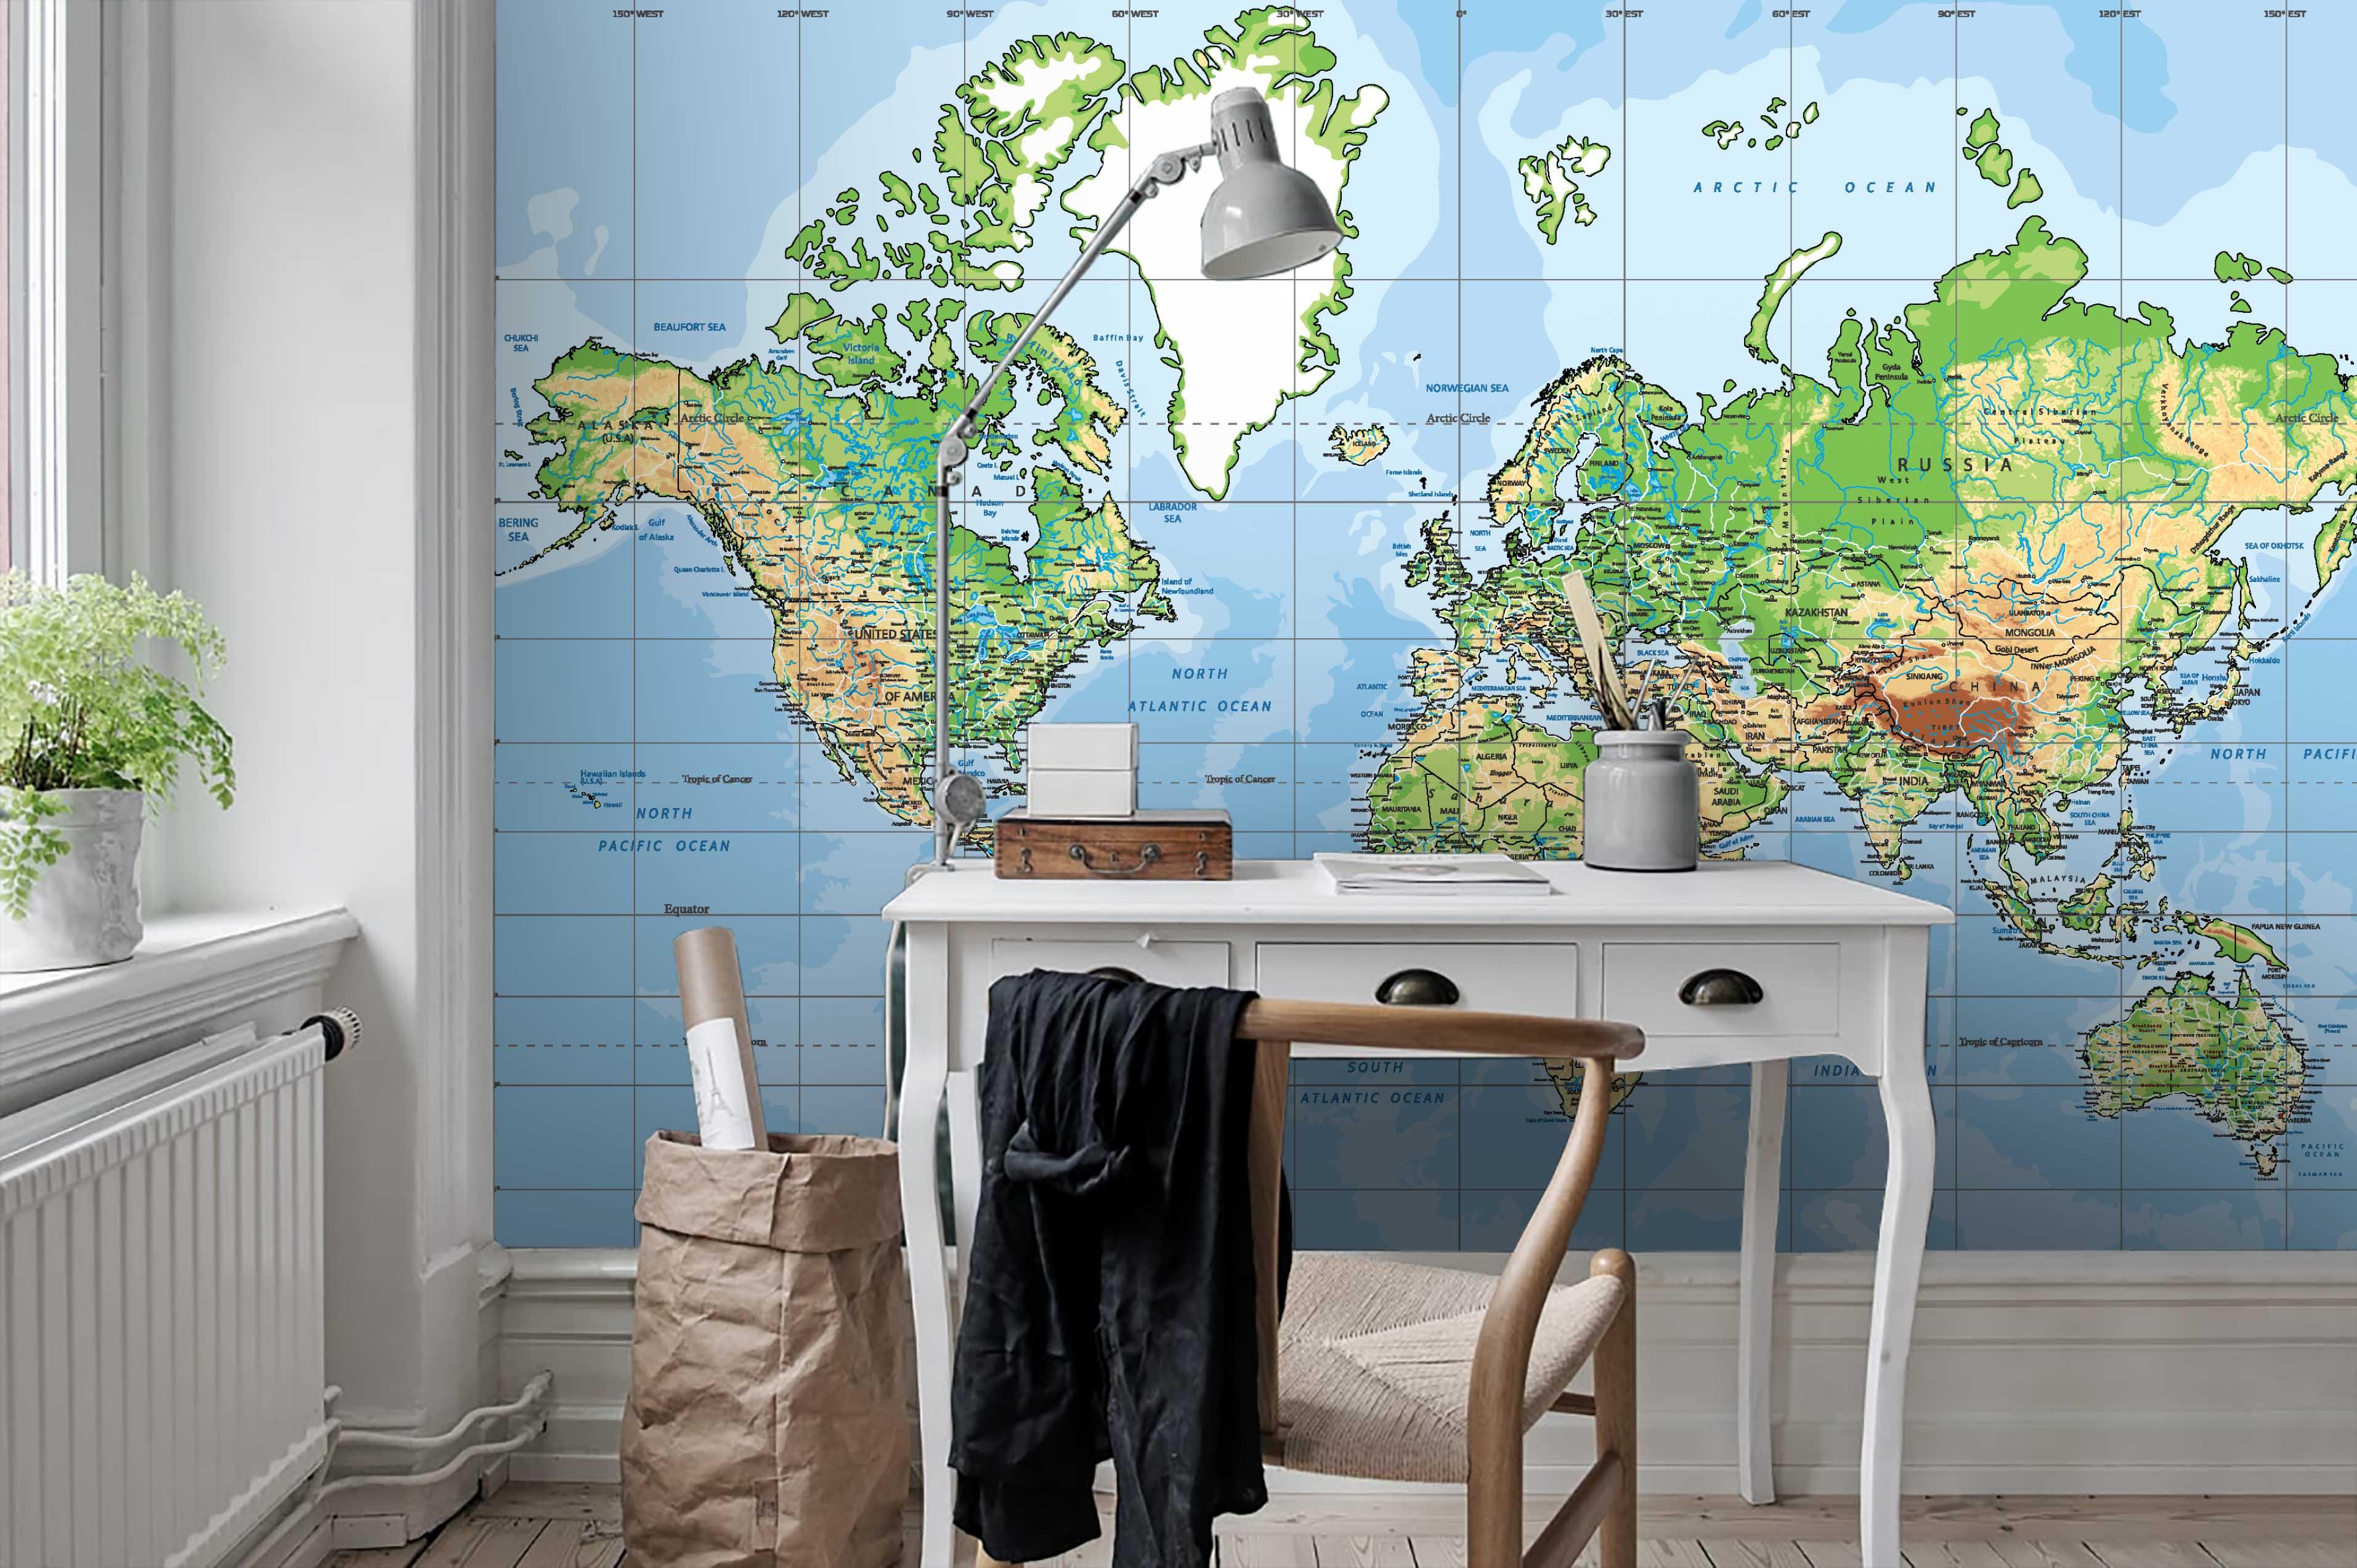 3D Blue World Map Wall Mural Wallpaper 53- Jess Art Decoration